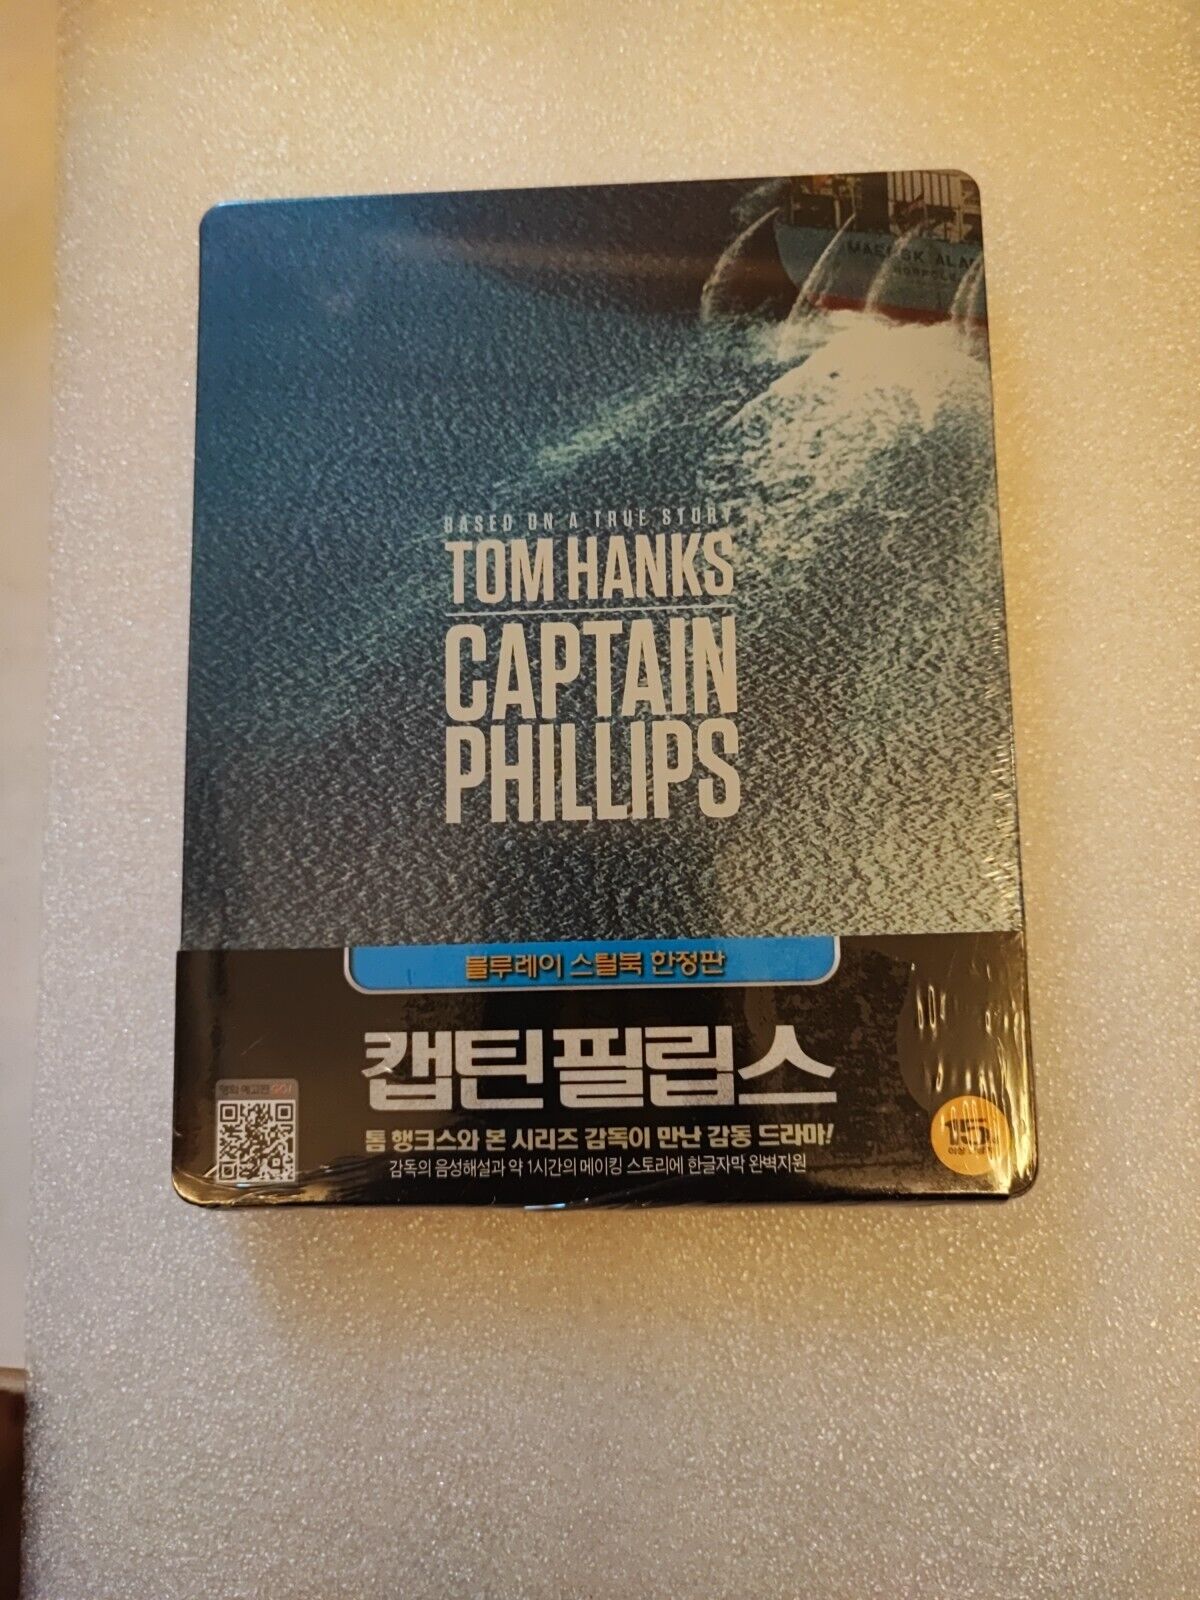 Captain Phillips Korea Bluray Steelbook, New/Sealed